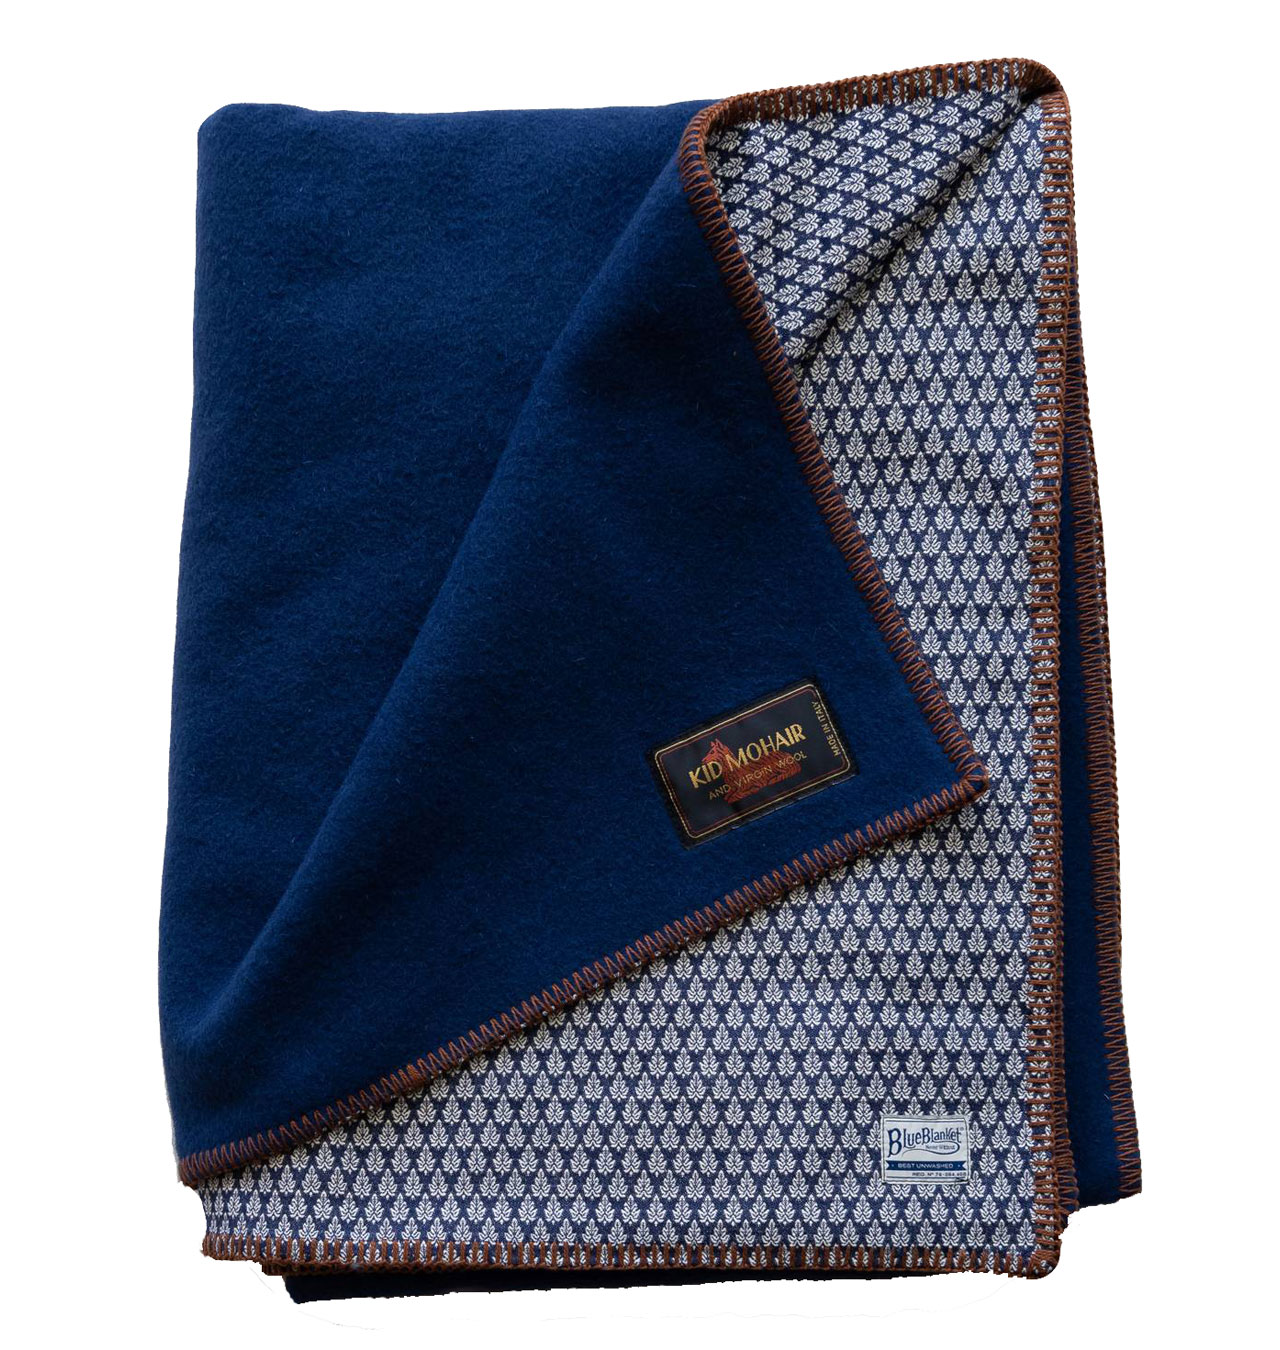 Blue Blanket - Mohair Wool Blanket